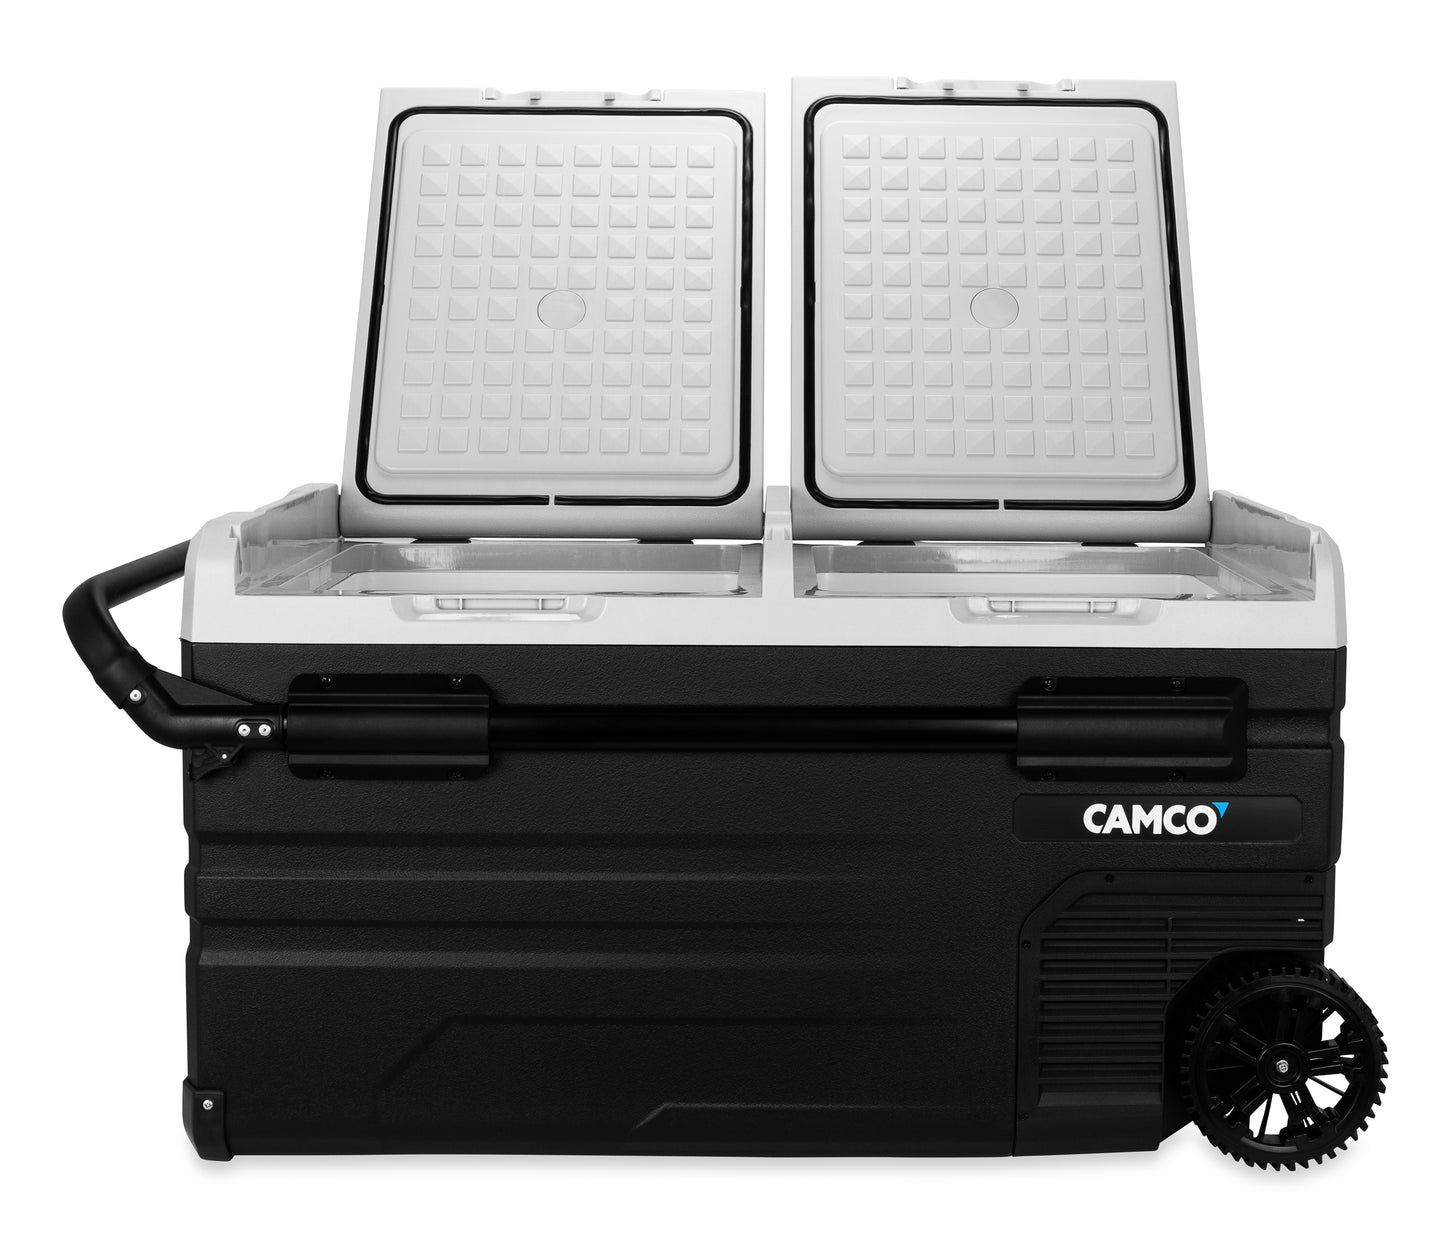 Camco Outdoors CAM-750 Portable Refrigerator / Freezer - 75 Liter